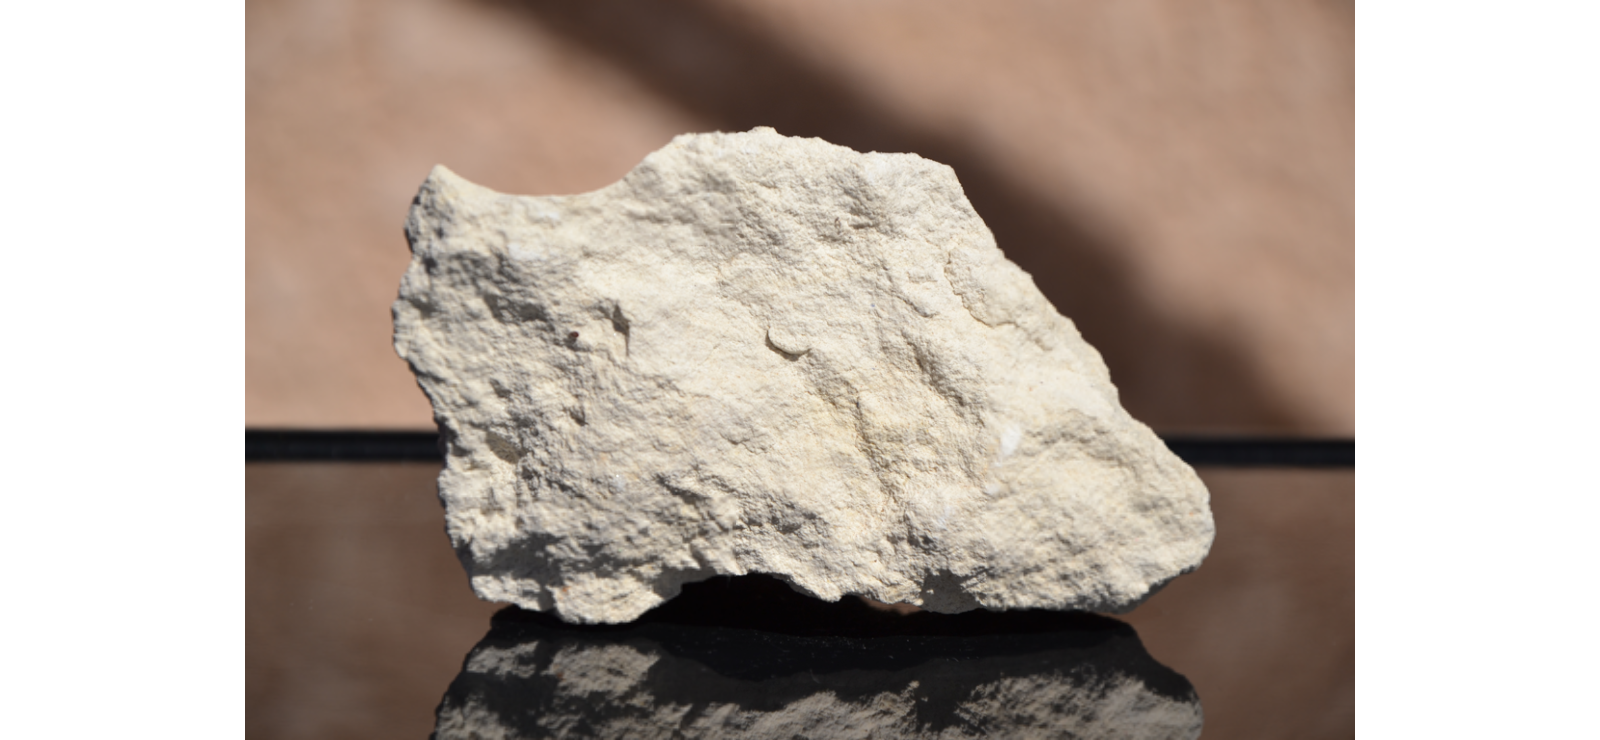 Rocha calcária, principal minério utilizada na produção de cimento. 